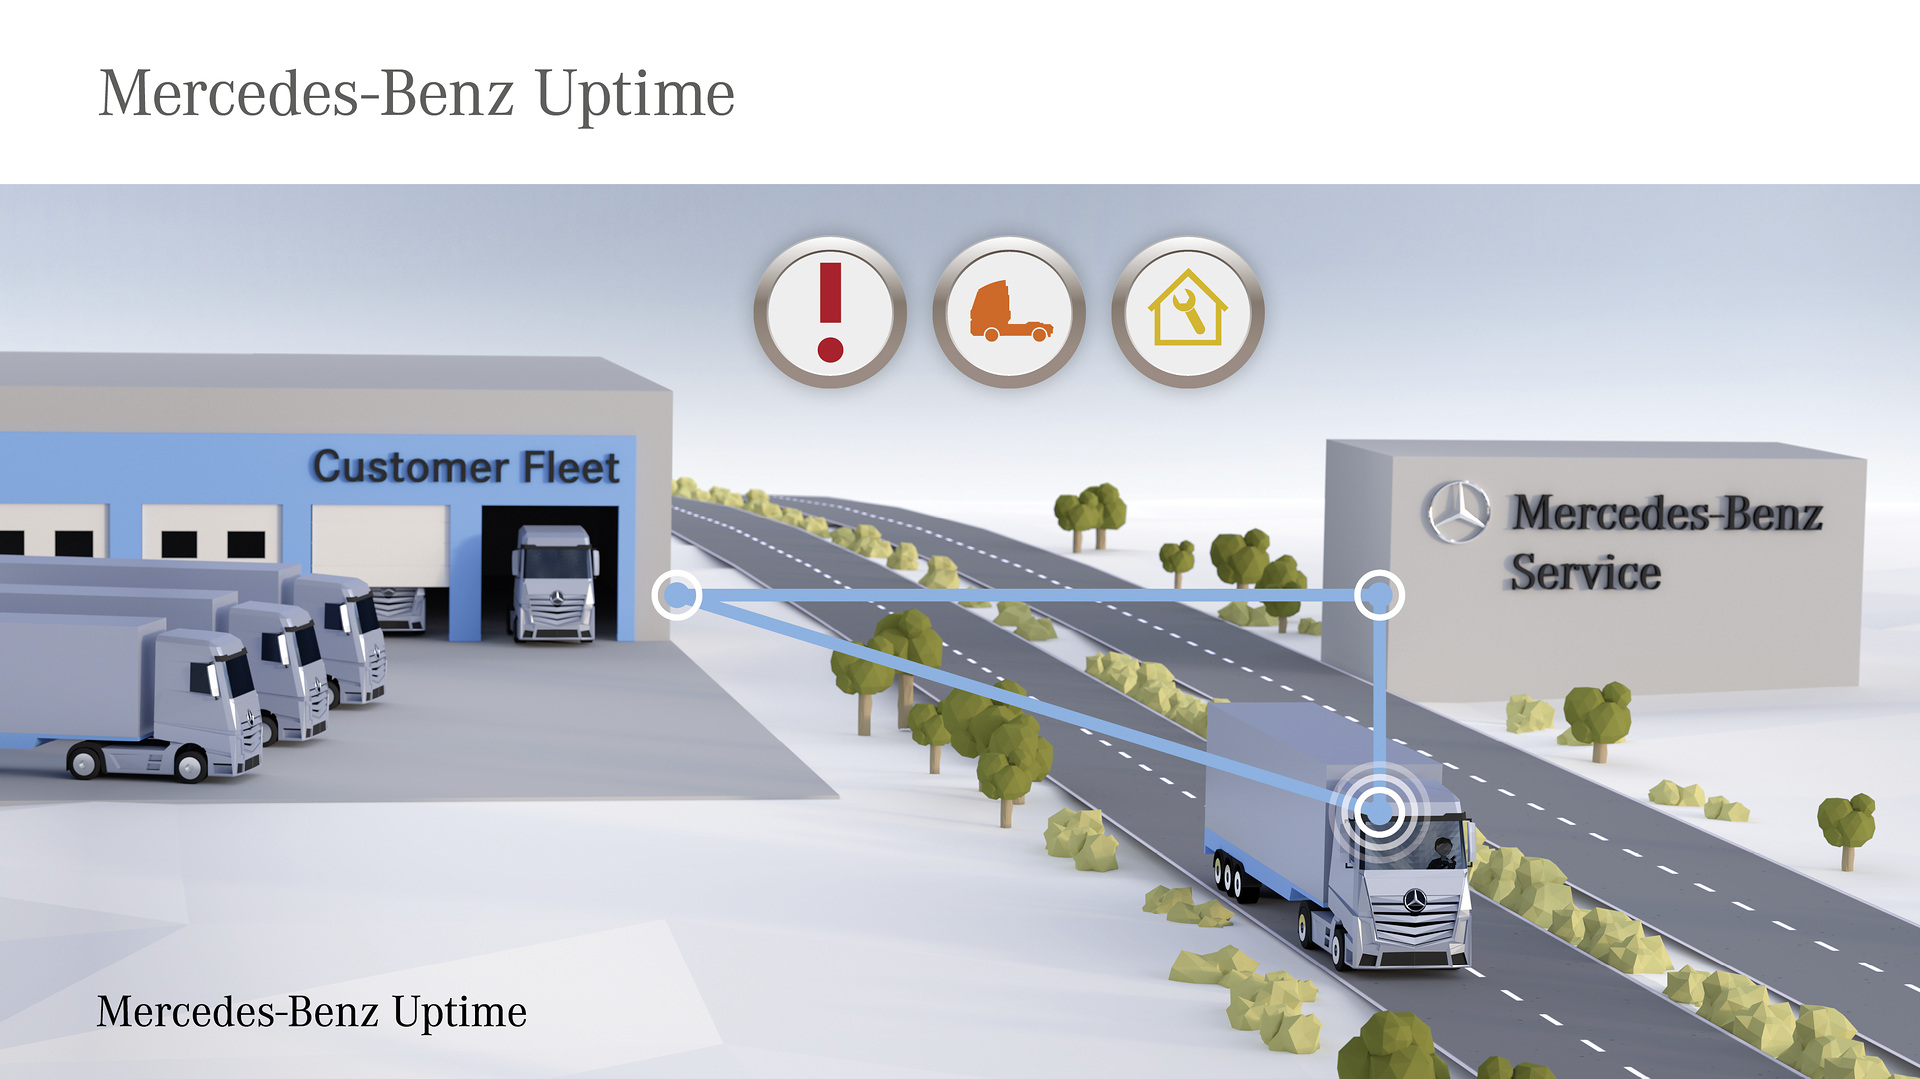 Markteinführung des Truck Data Center und umfangreiche digitale Dienste für Mercedes-Benz Lkw